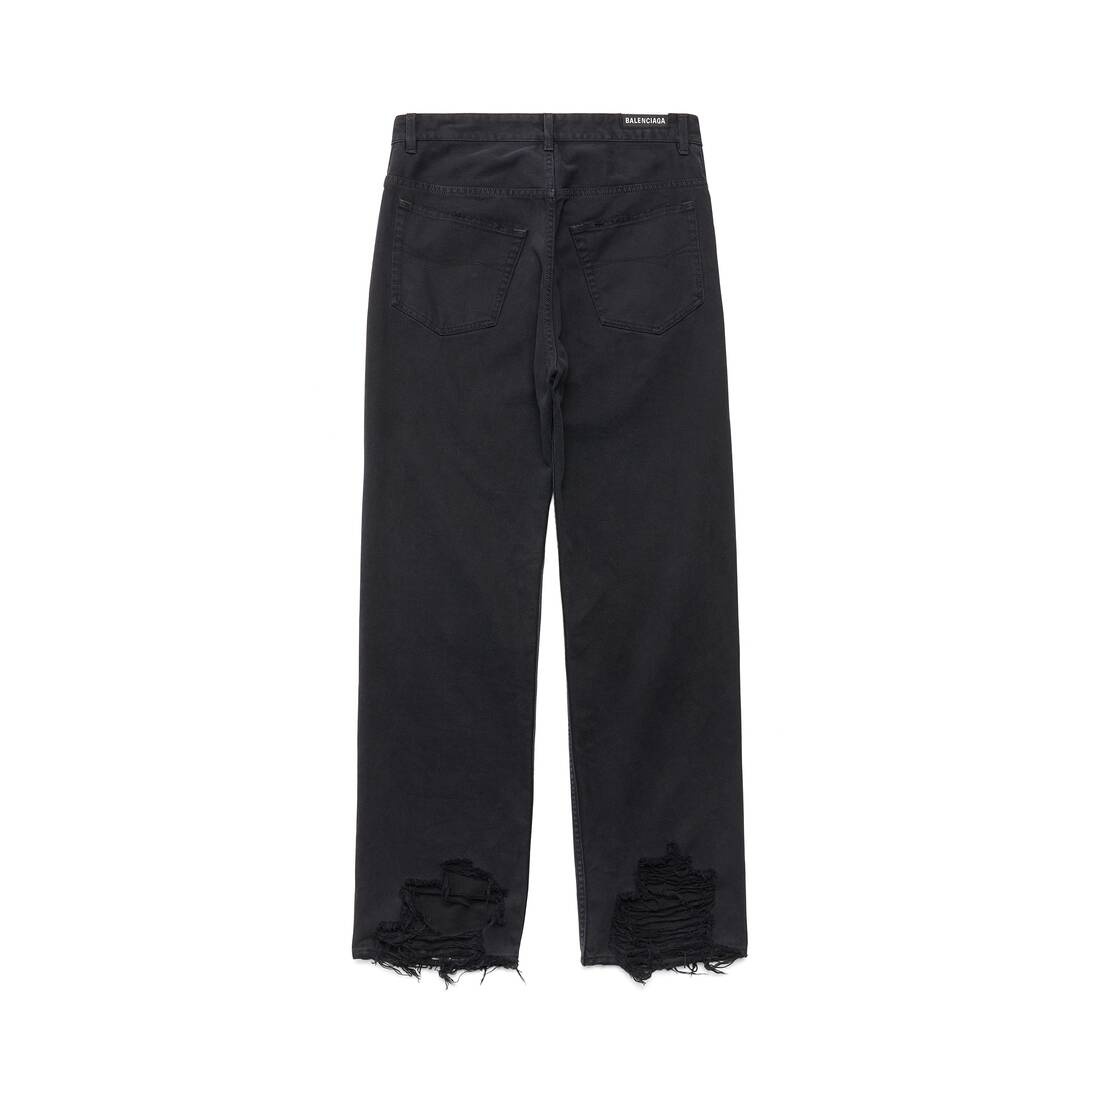 Medium Fit Pants in Black - 2